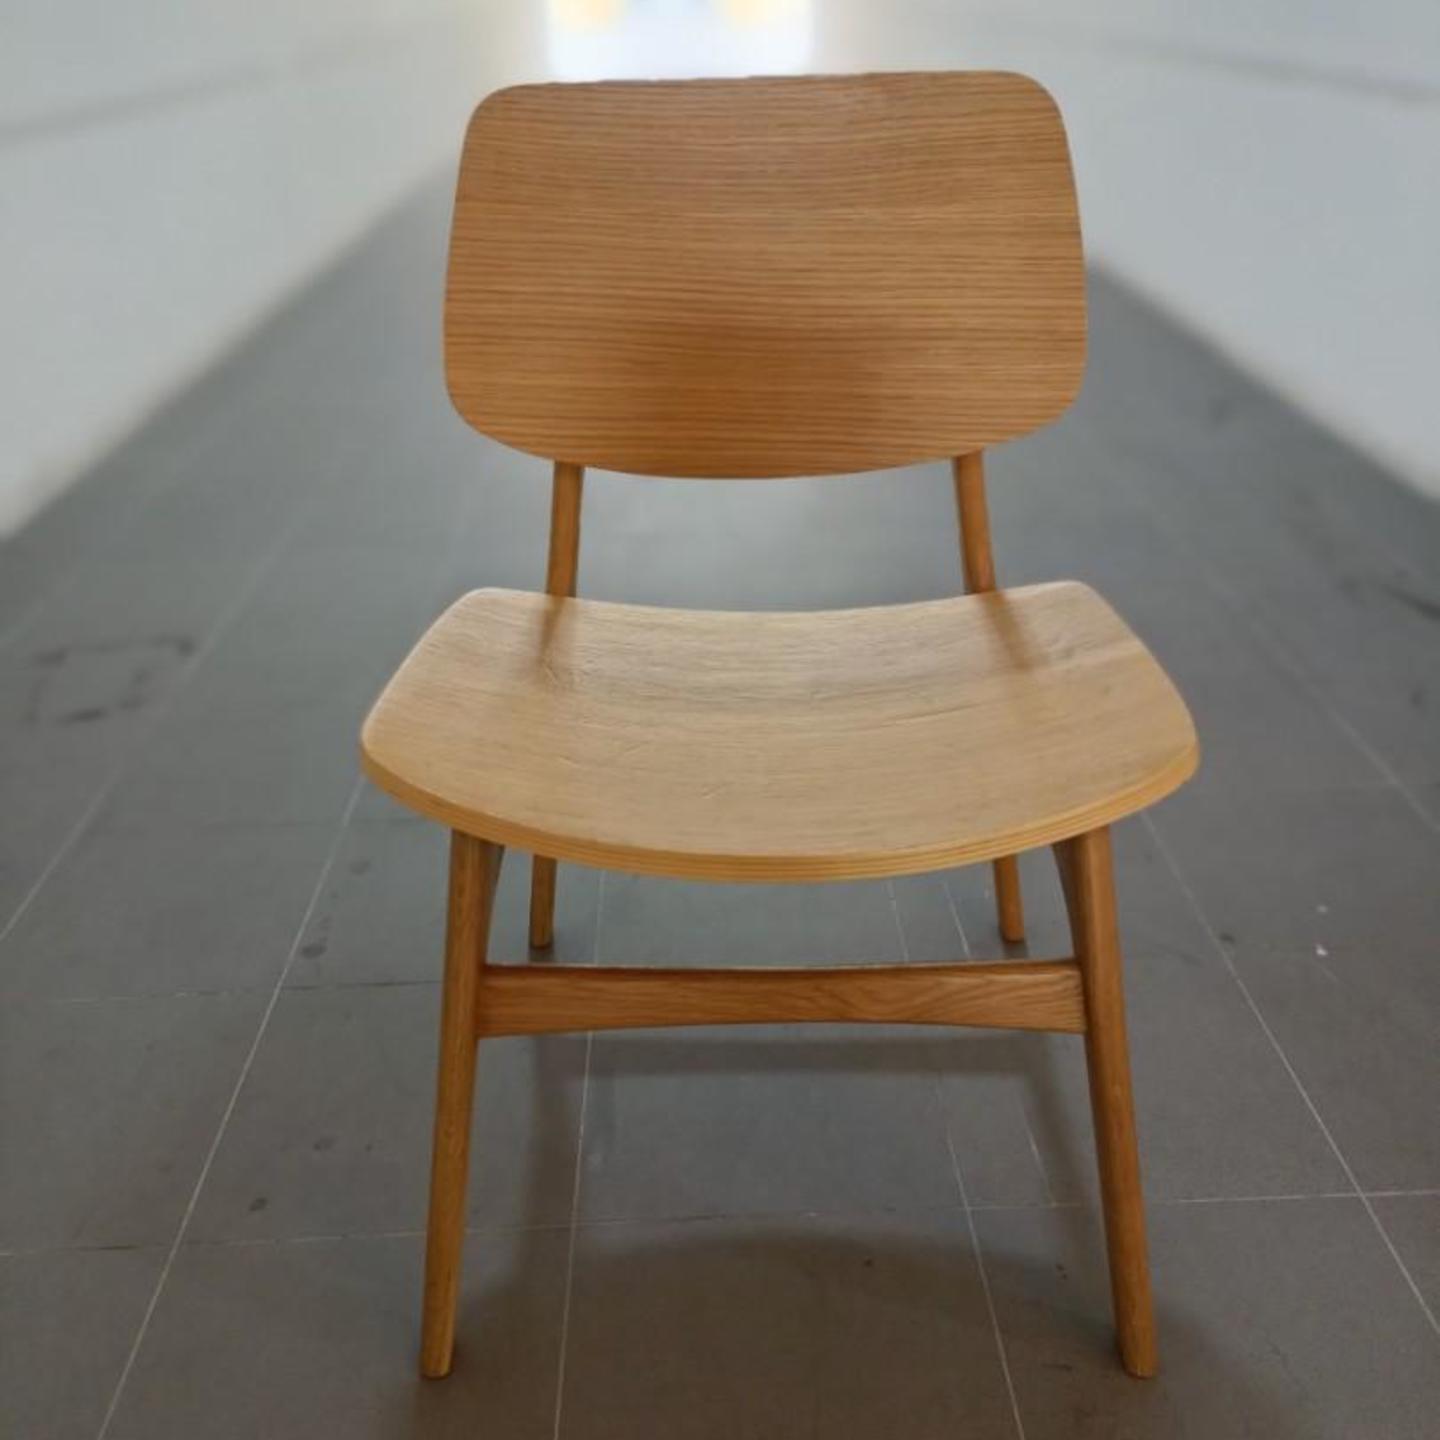 ROFA Solid Wood Chair In NATURAL OAK